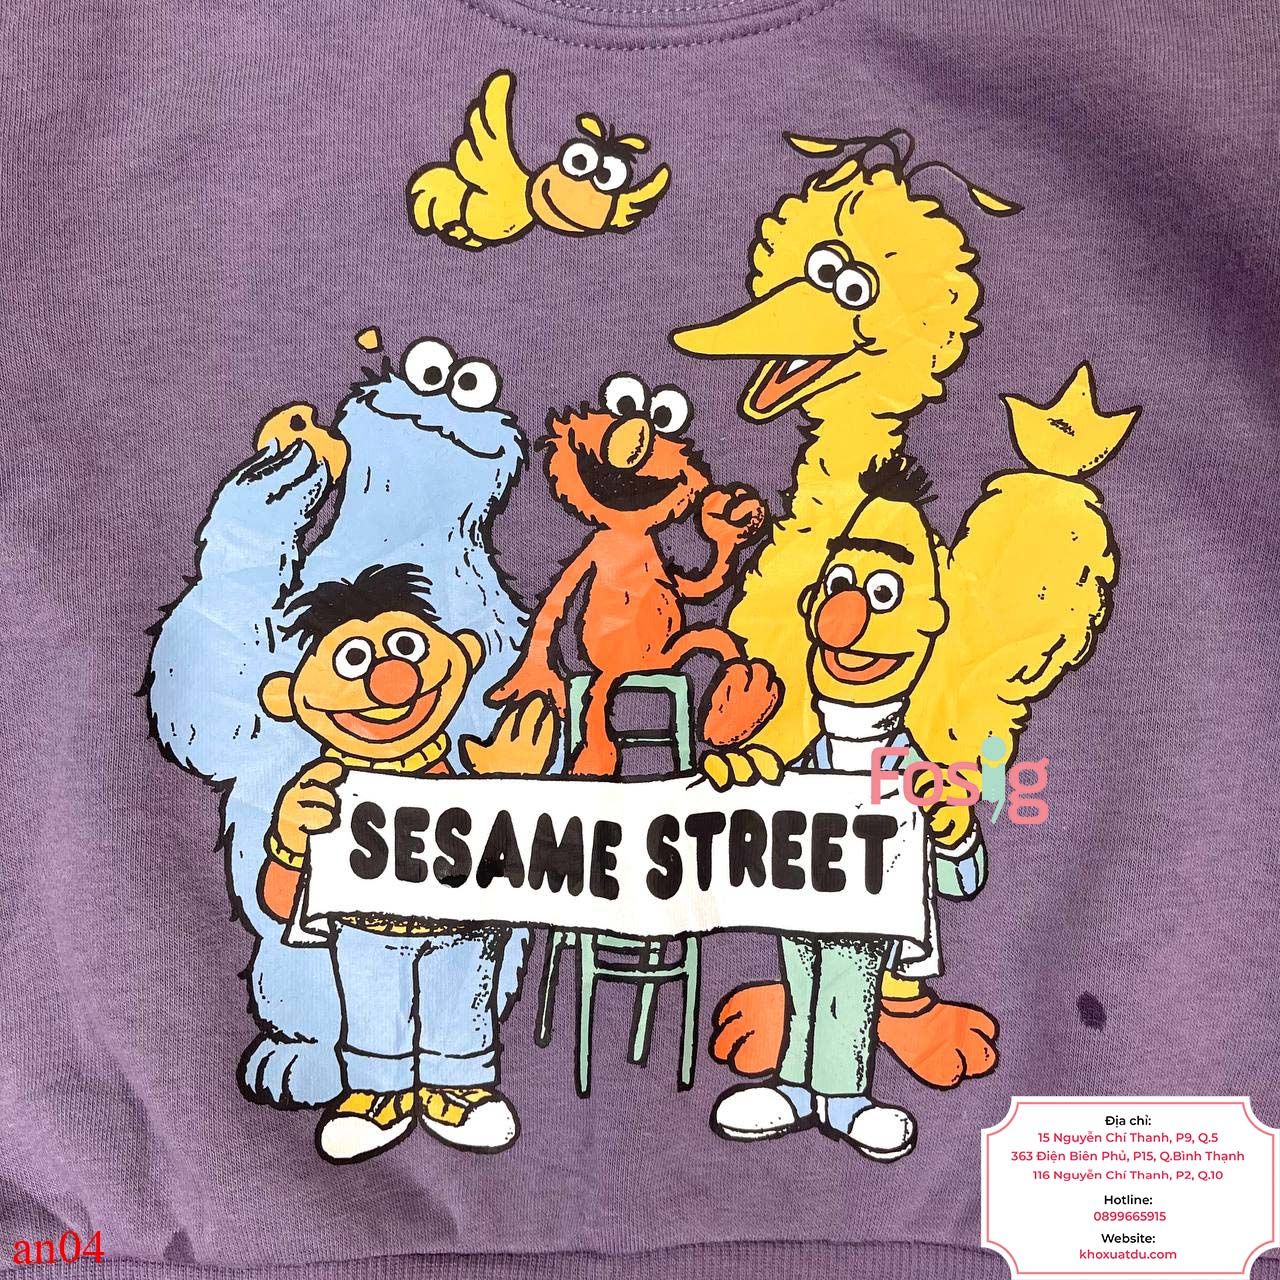  [7-8kg, 12-20kg] Áo Nỉ Da Cá Bé Trai - Tím Sesame Street 